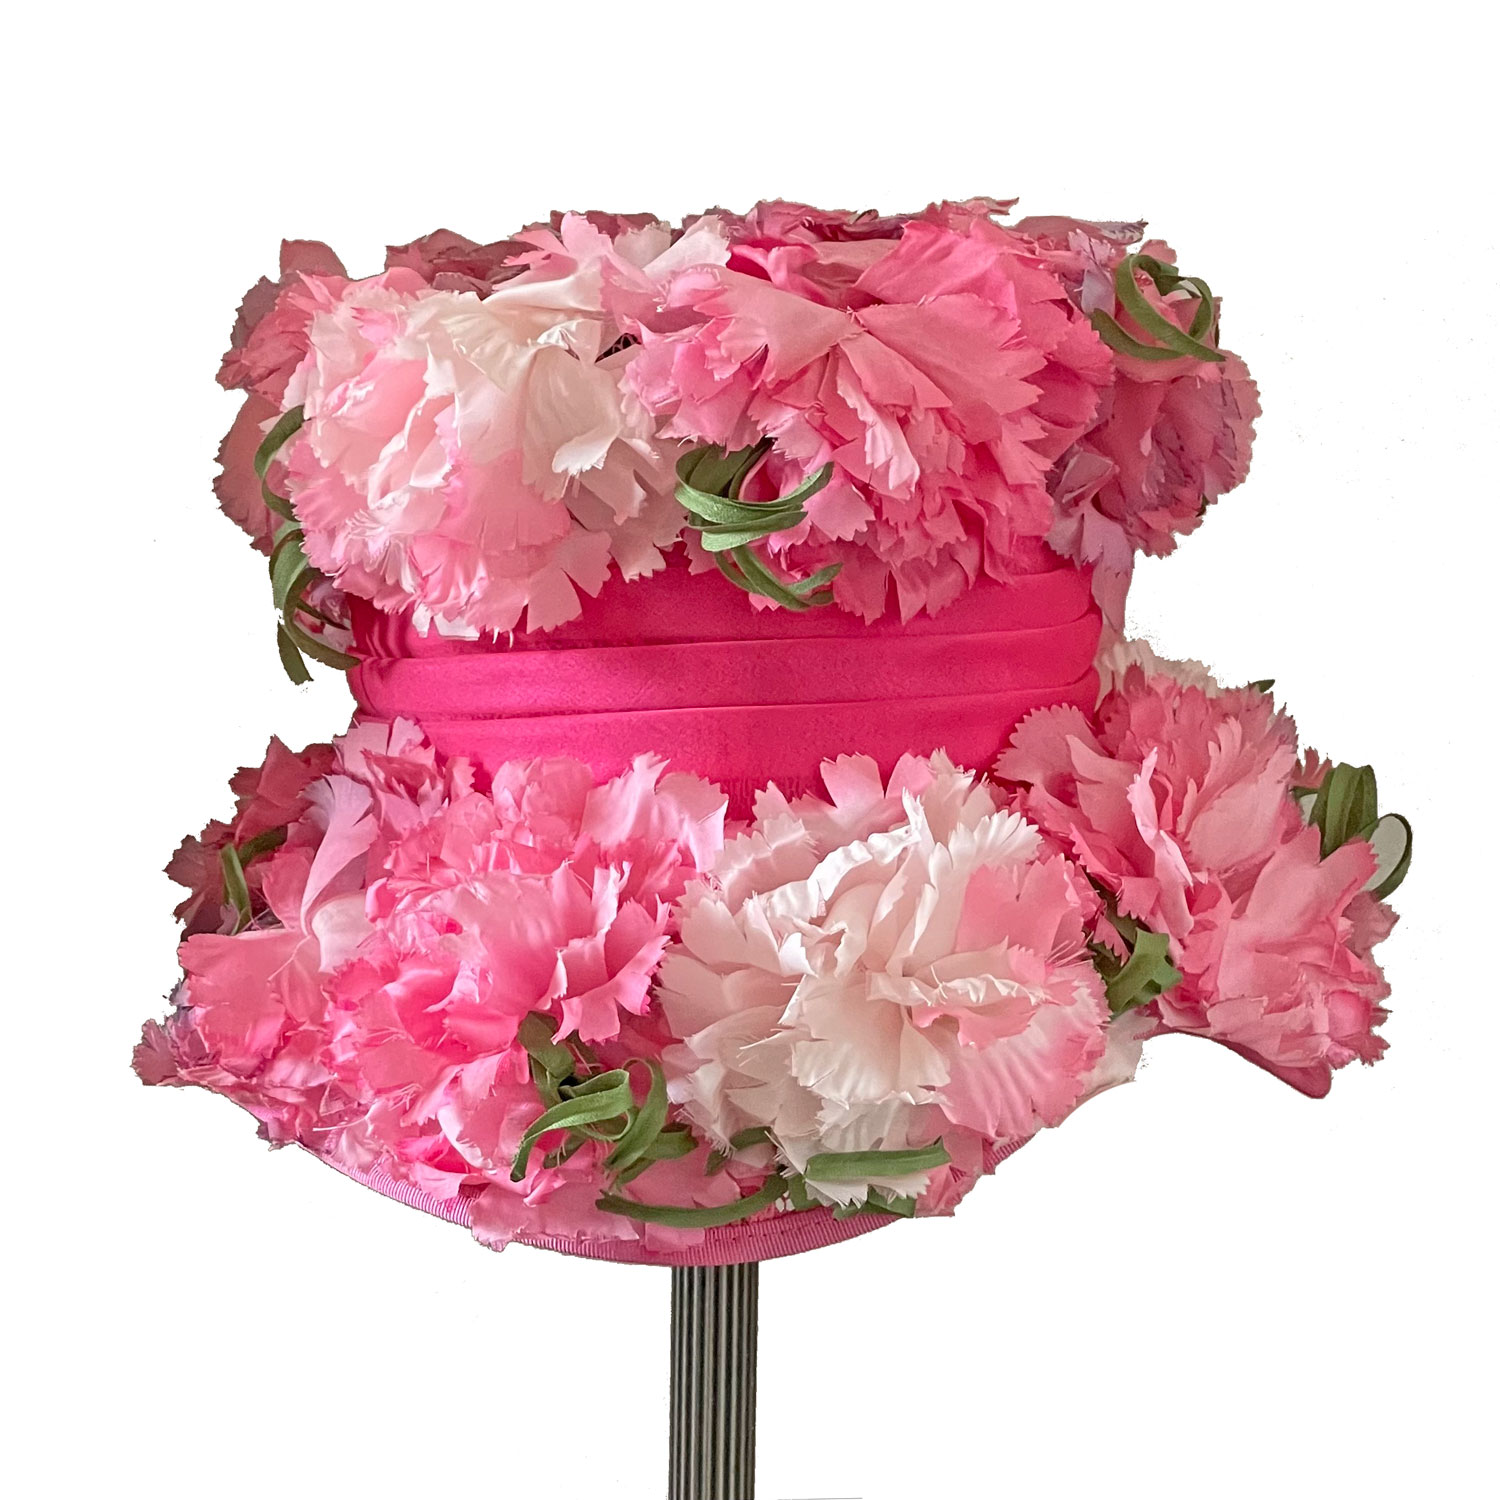 1960s pink floral hat